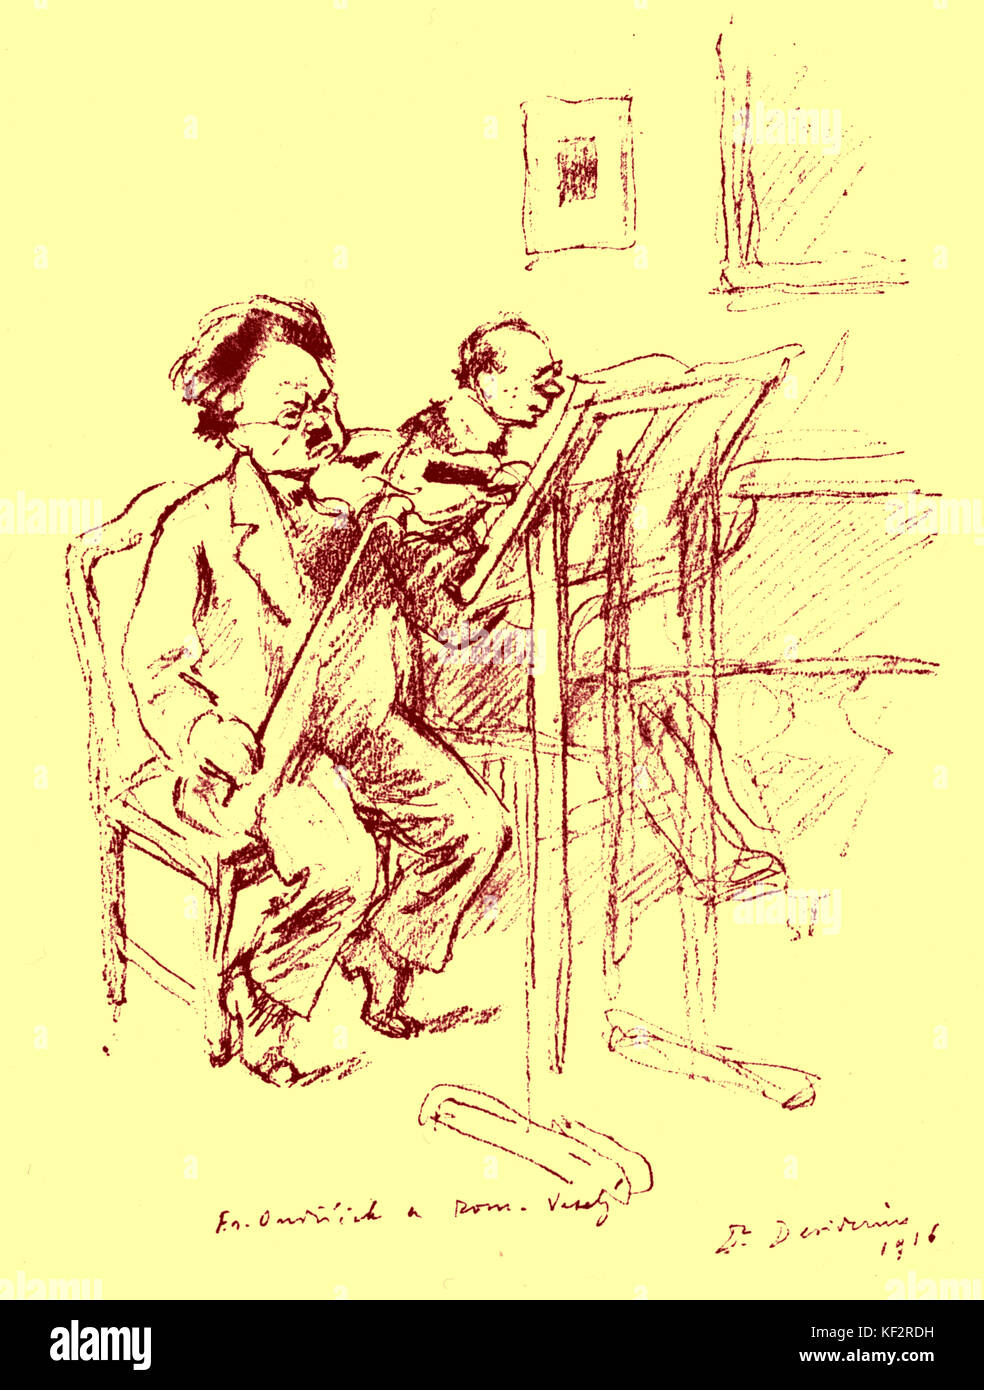 Franz Ondricek - suonare il violino con R Vesely suonare il pianoforte, 1916. Ondricek: il violinista ceco, 1857-1922. Figlio di Jan Ondricek Foto Stock